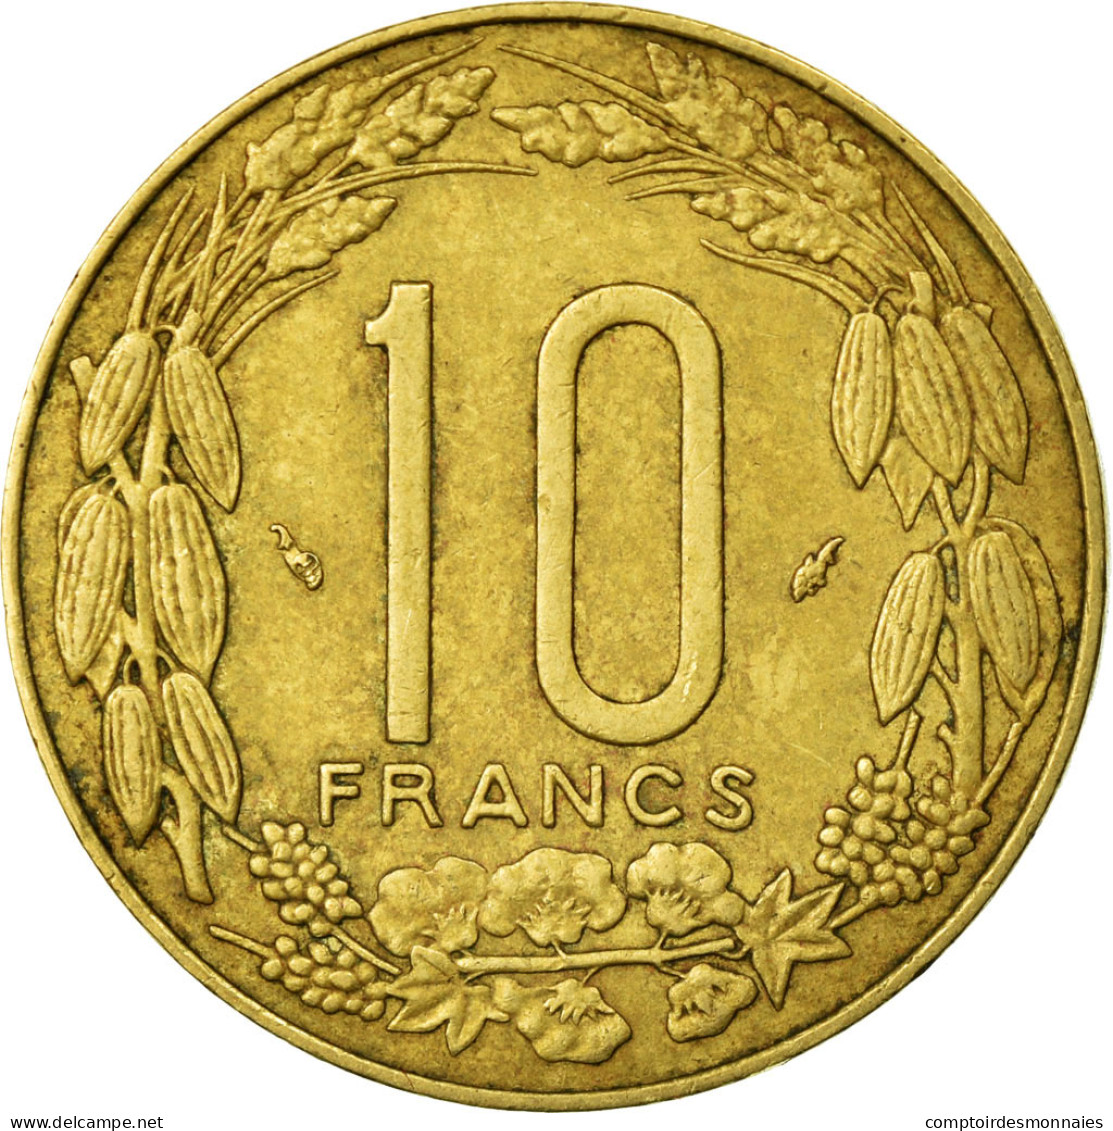 Monnaie, États De L'Afrique Centrale, 10 Francs, 1983, Paris, TB+ - Centraal-Afrikaanse Republiek